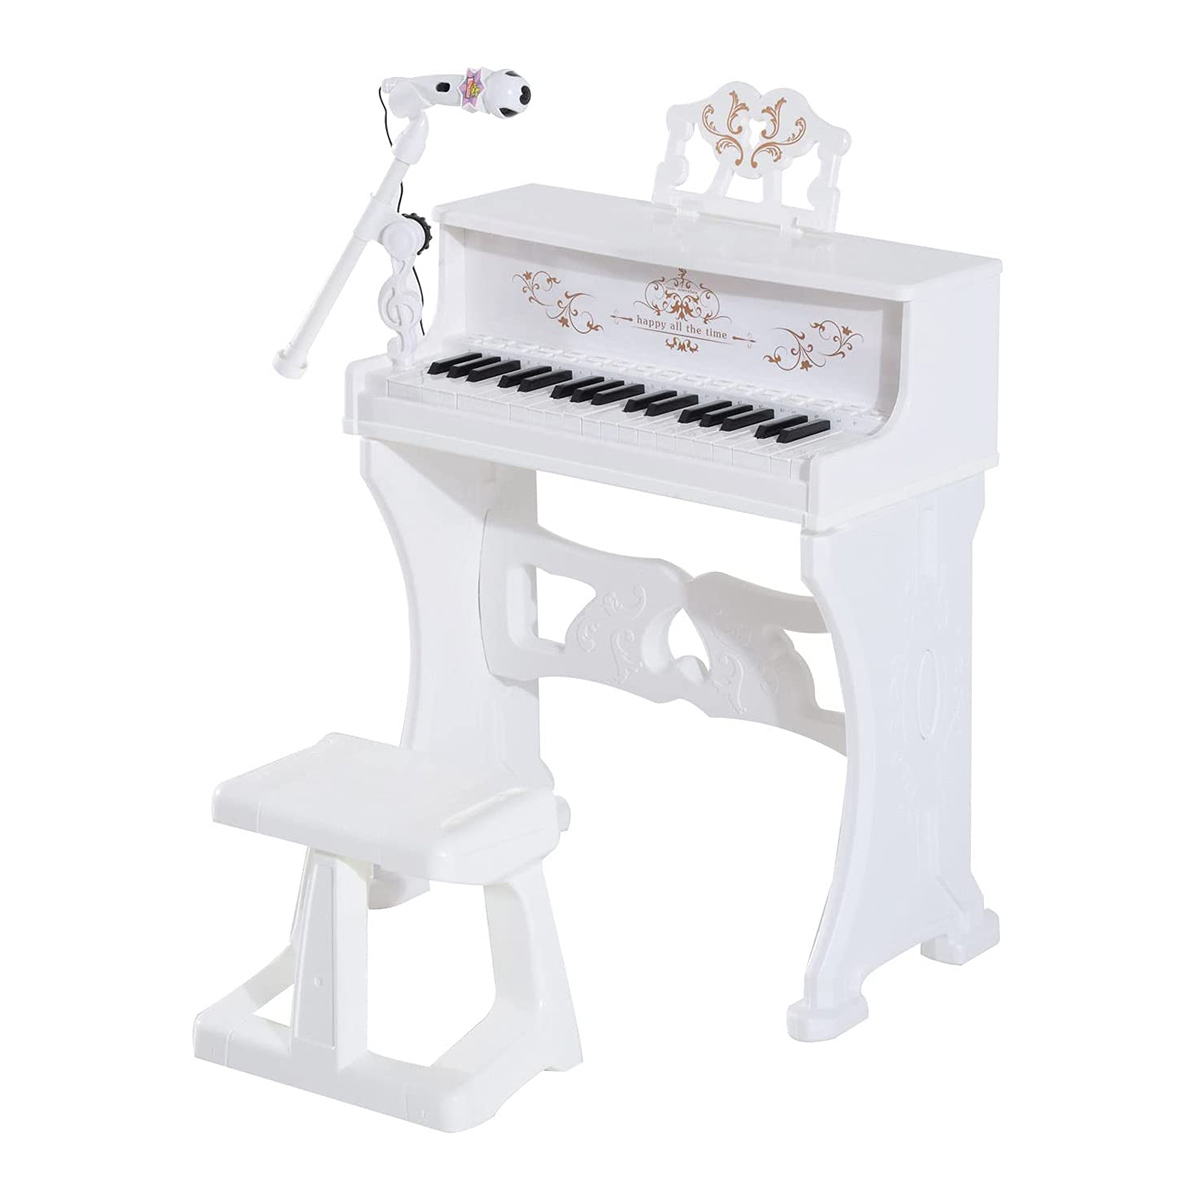 نقد و بررسی اسباب بازی مدل مینی پیانو alice کد 88033 توسط خریداران